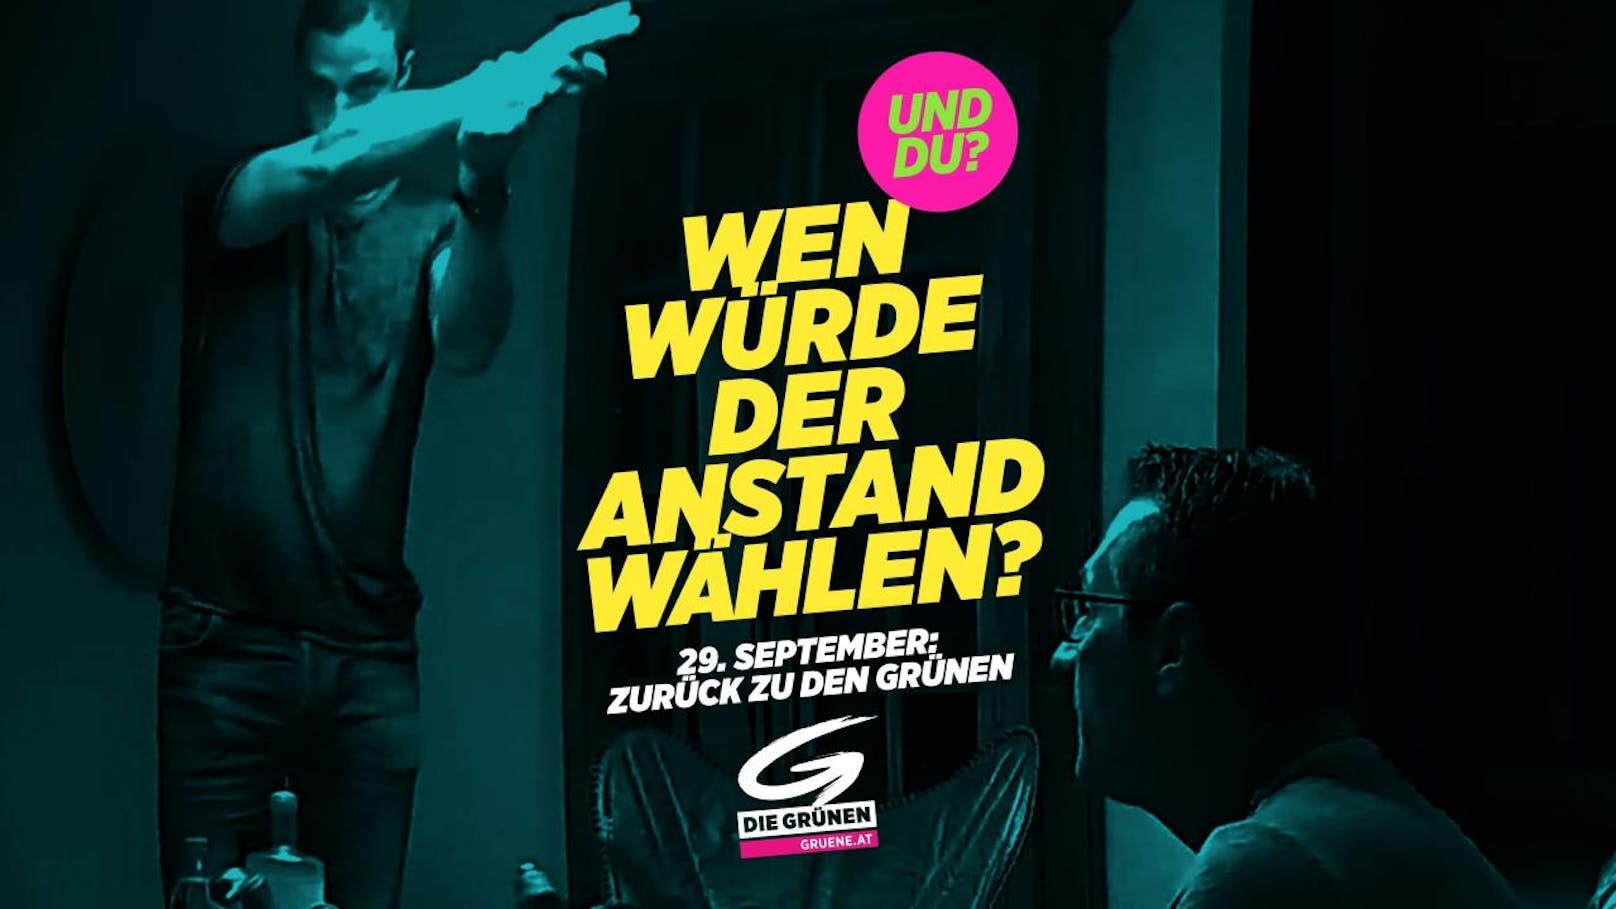 "Wen würde der Anstand wählen?" fragt das Plakat und zeigt Gudenus und Strache aus dem Ibiza-Video.